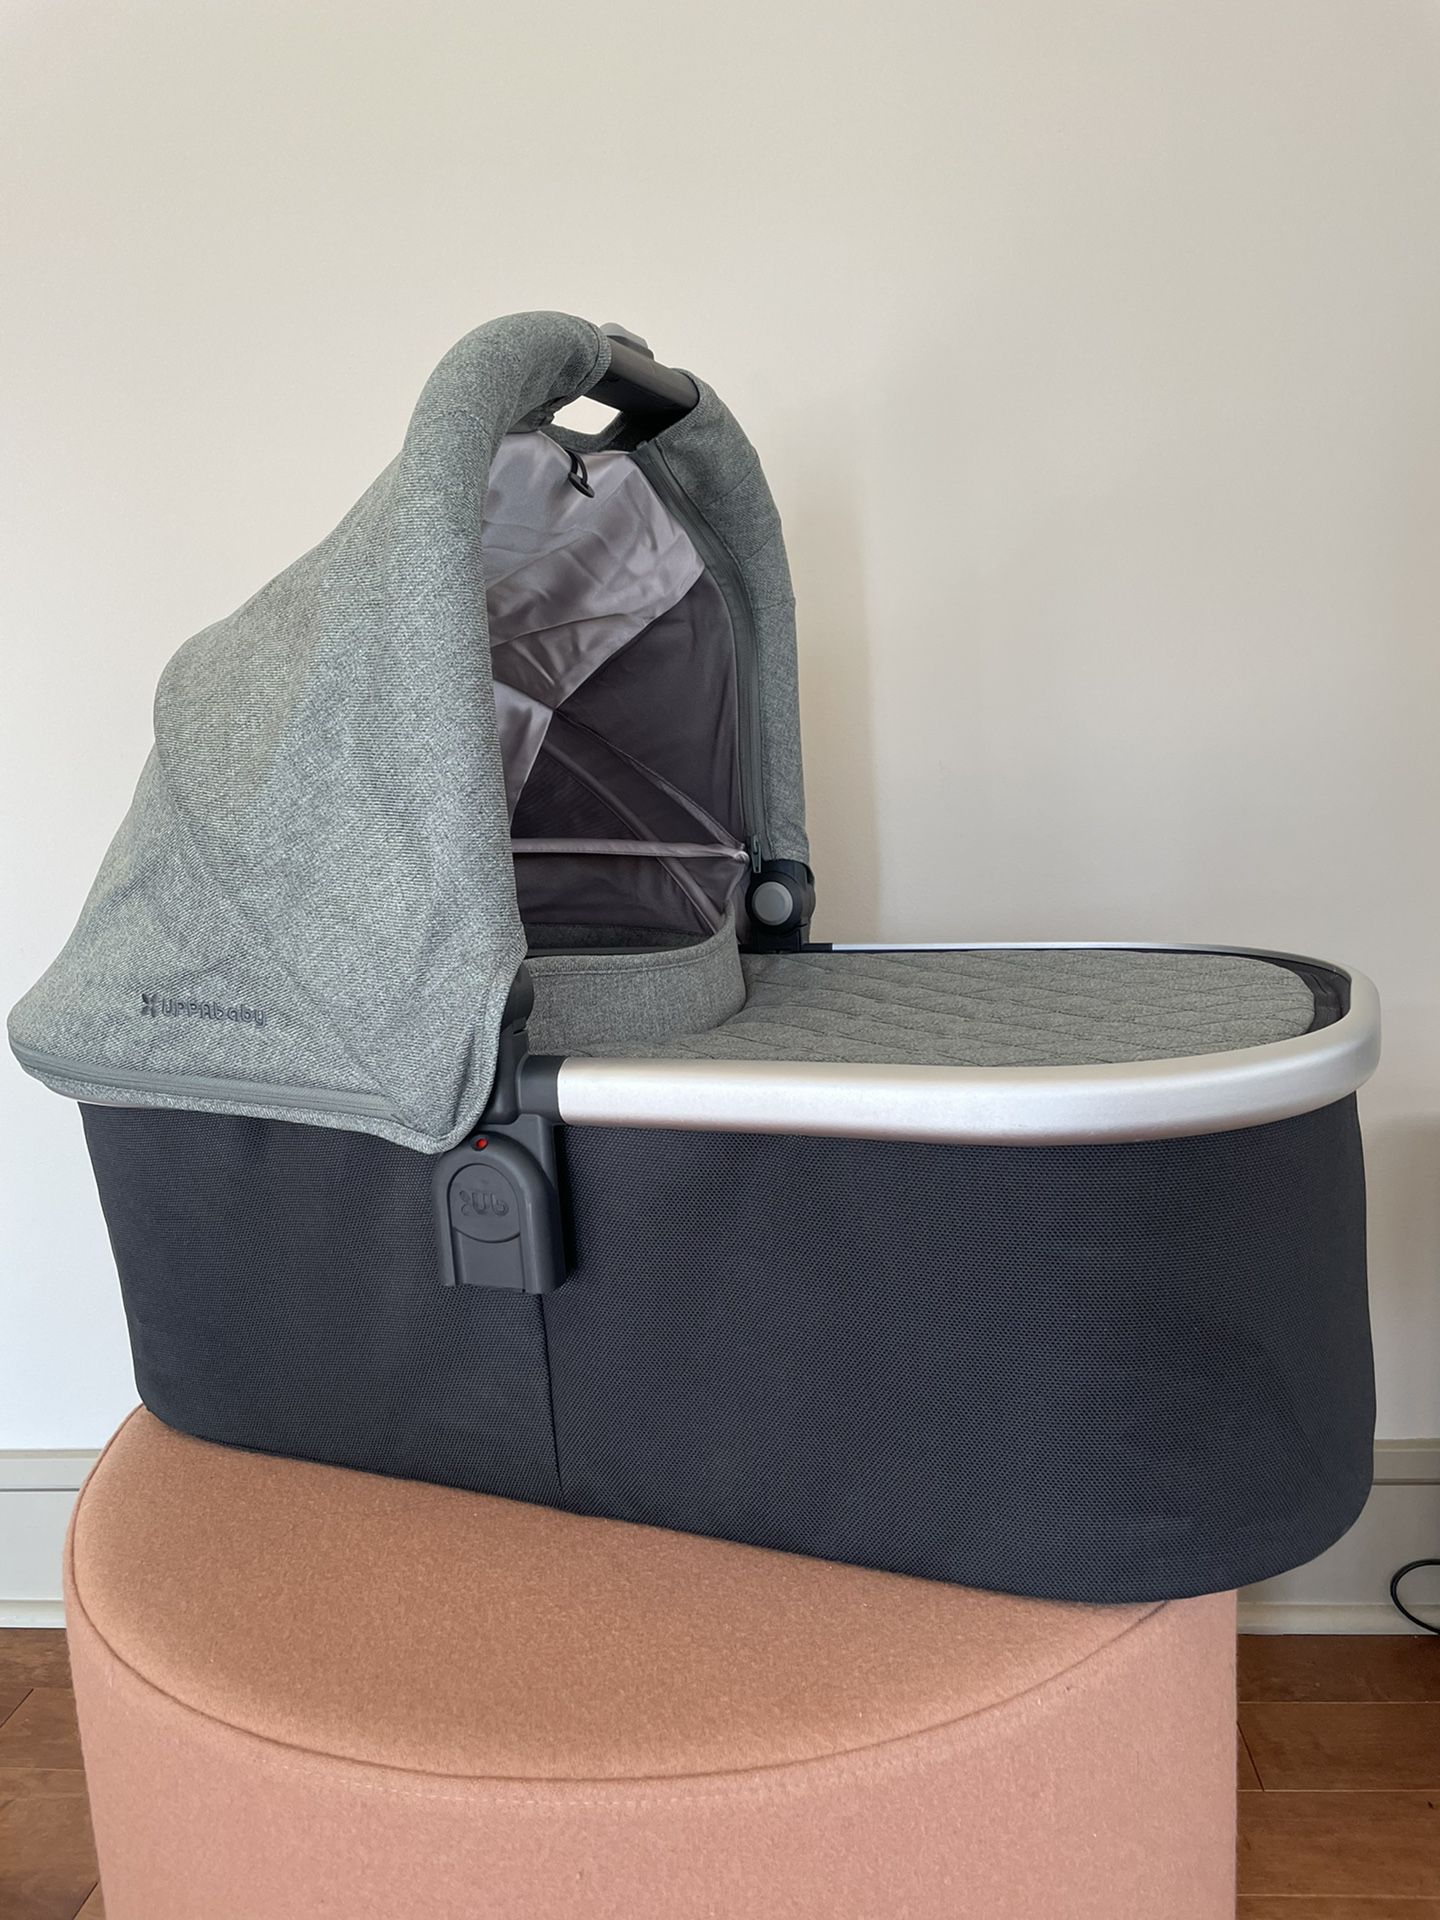 Uppababy Vista bassinet - 2018 model